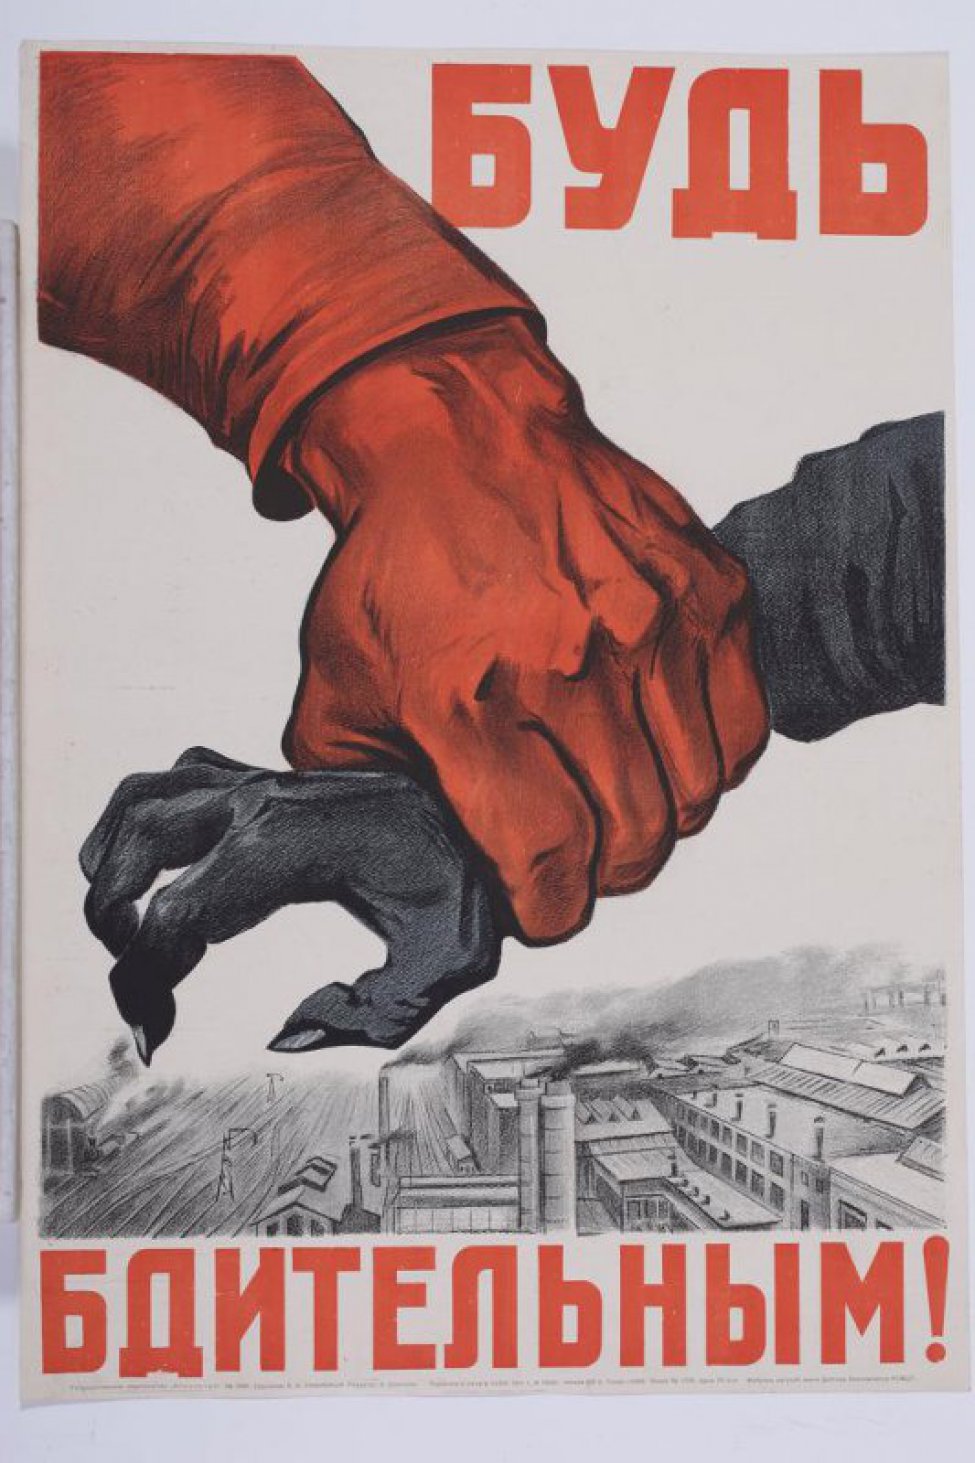 Изображена красная огромная рука, сжимающая  черную руку с согнутыми, как у птицы, пальцами и длинными когтями.